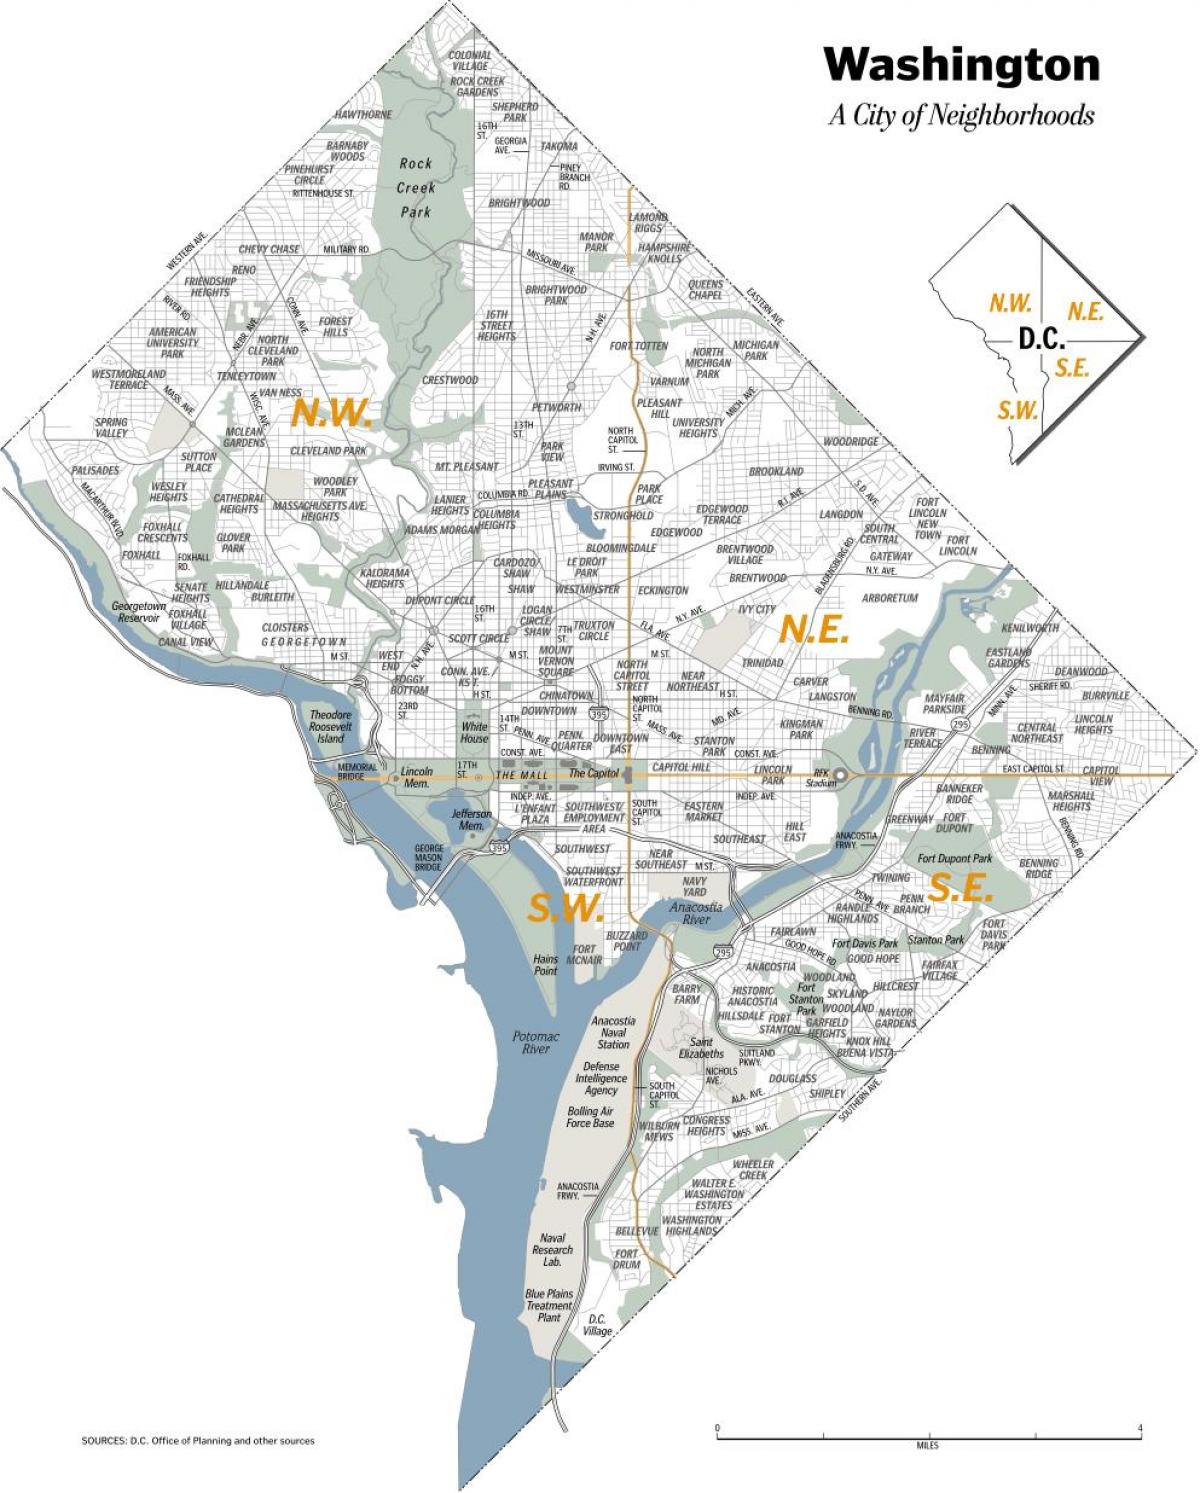 Washington DC neighborhoods map